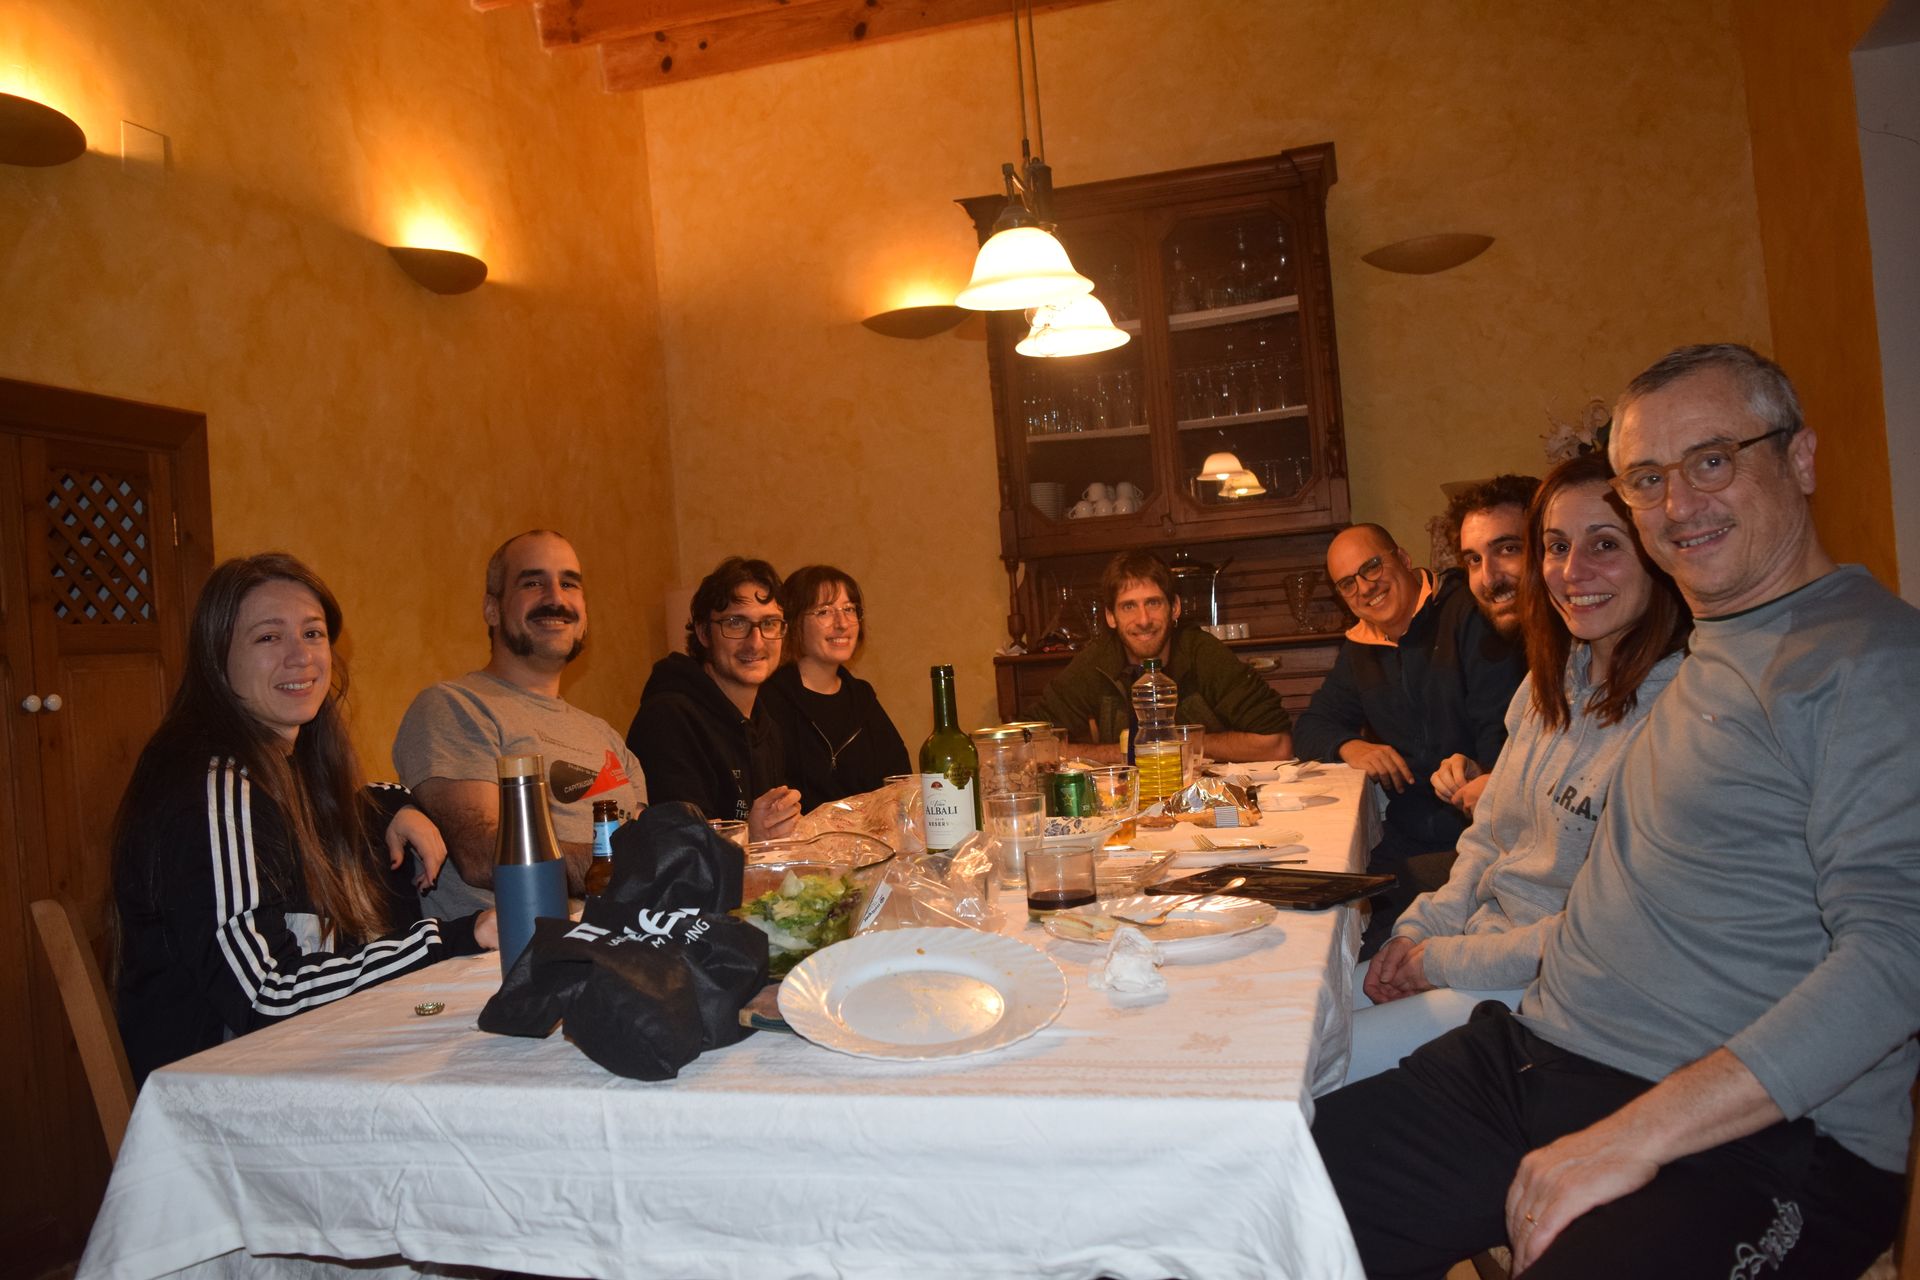 Por orden de aparición en la imagen de izquierda a derecha: Kon, Lai, Jordi, Carla, Adriá, Sergi,Dani, servidora y Eugeni